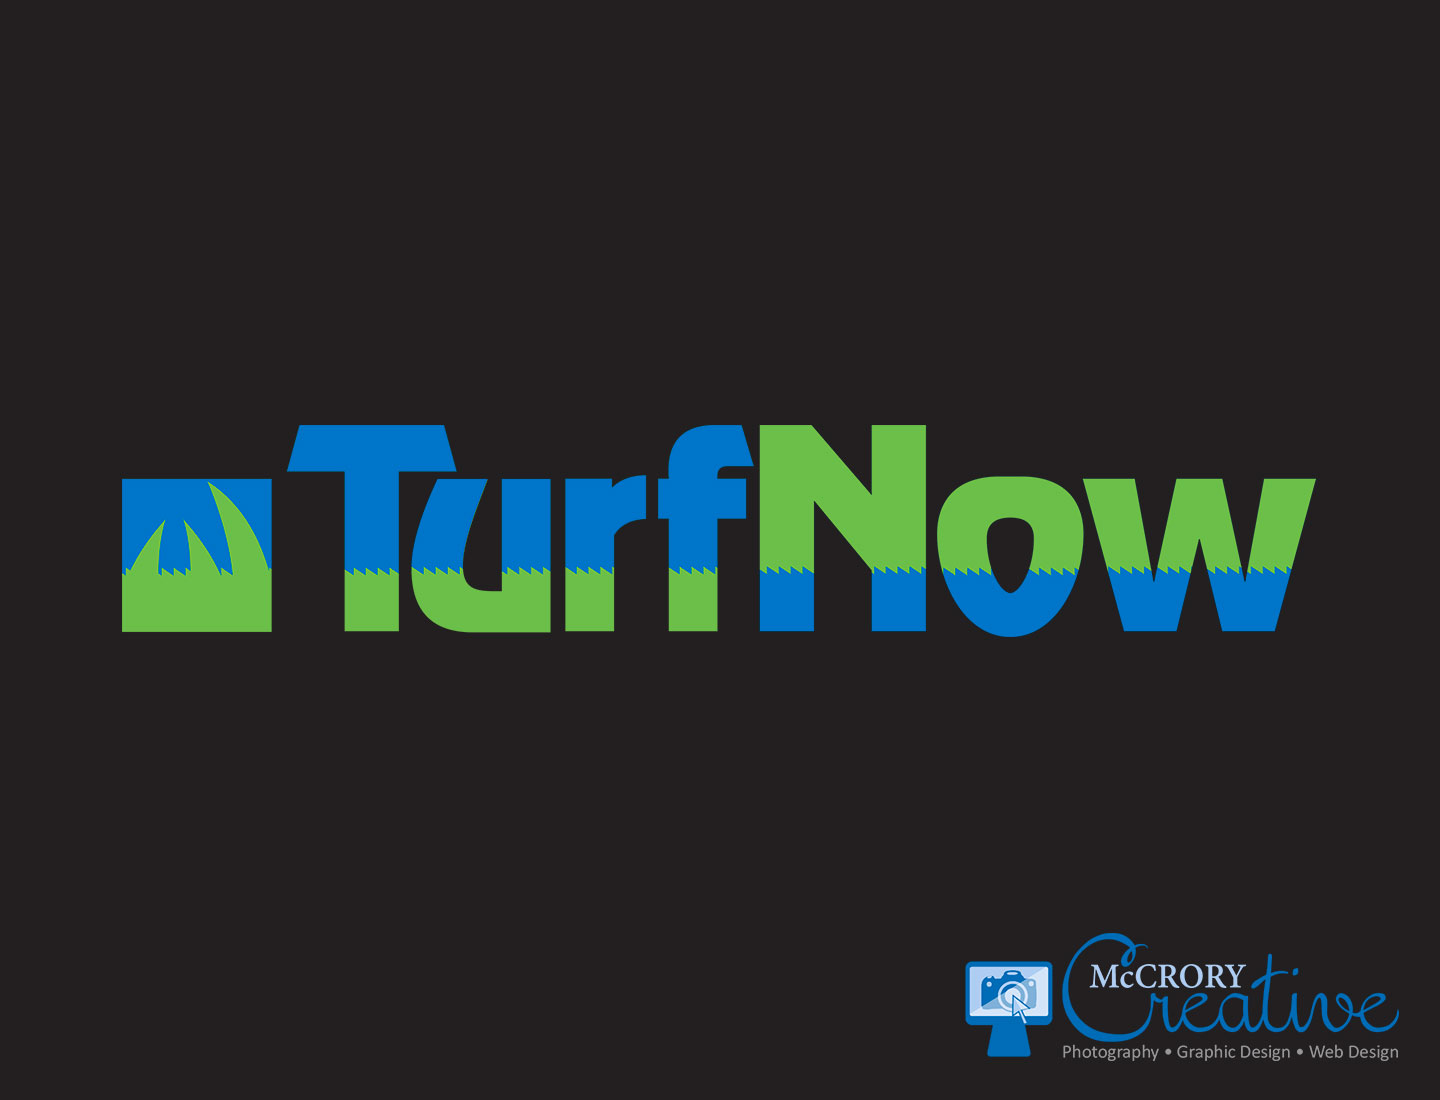 Turfnow logo design